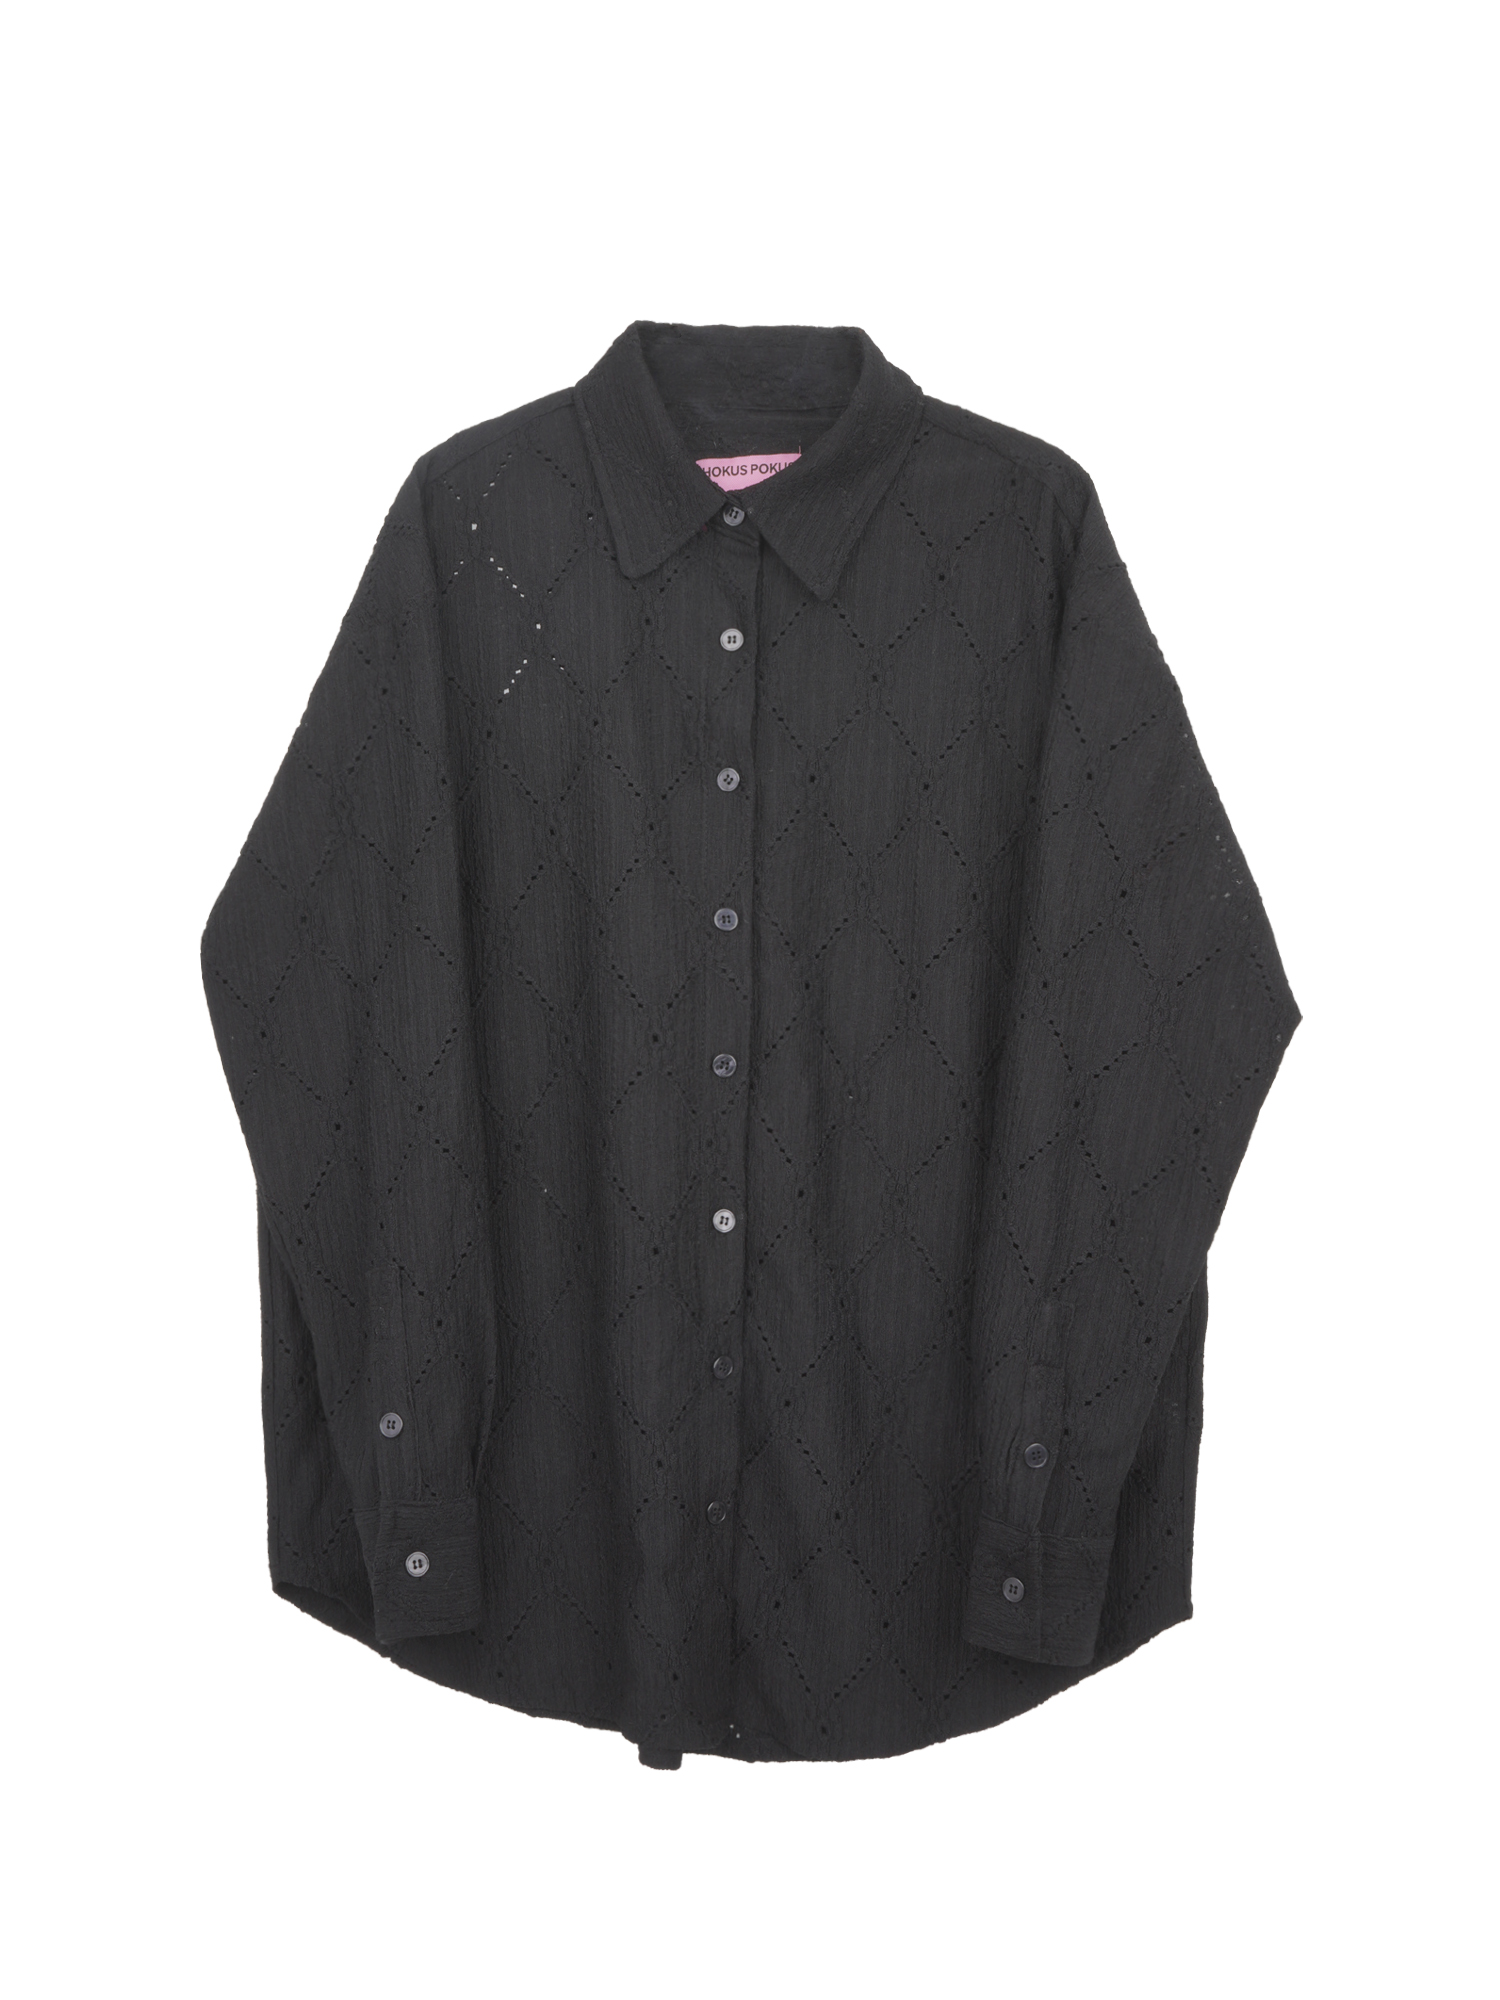 Crochet Overfit Shirt - Black